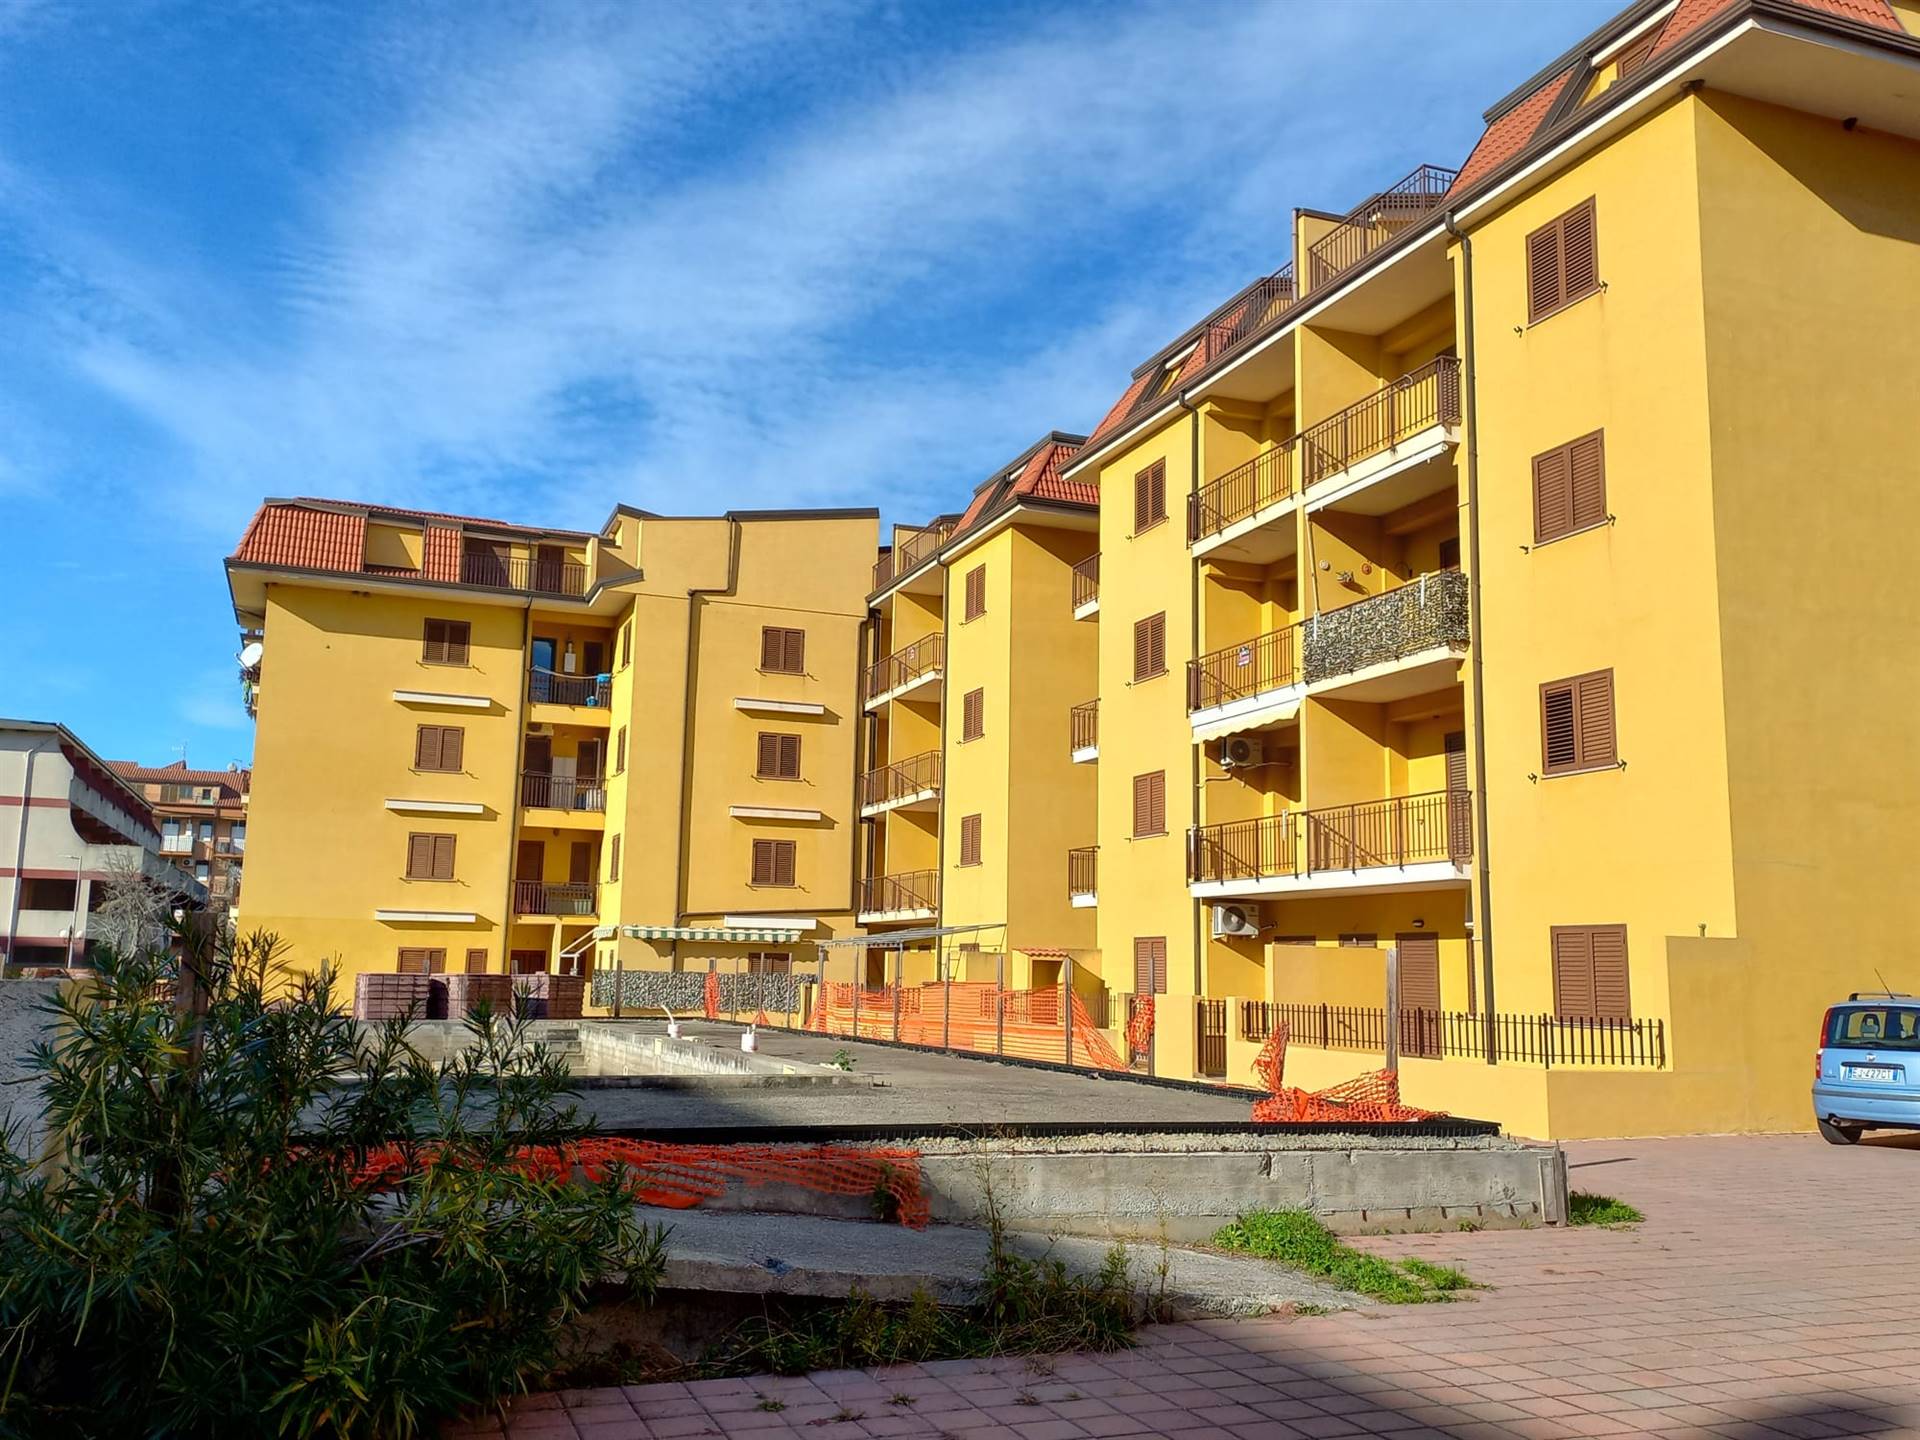 Appartamento in vendita a Nocera Terinese, 4 locali, zona Località: MARINA DI NOCERA TERINESE, prezzo € 54.000 | CambioCasa.it